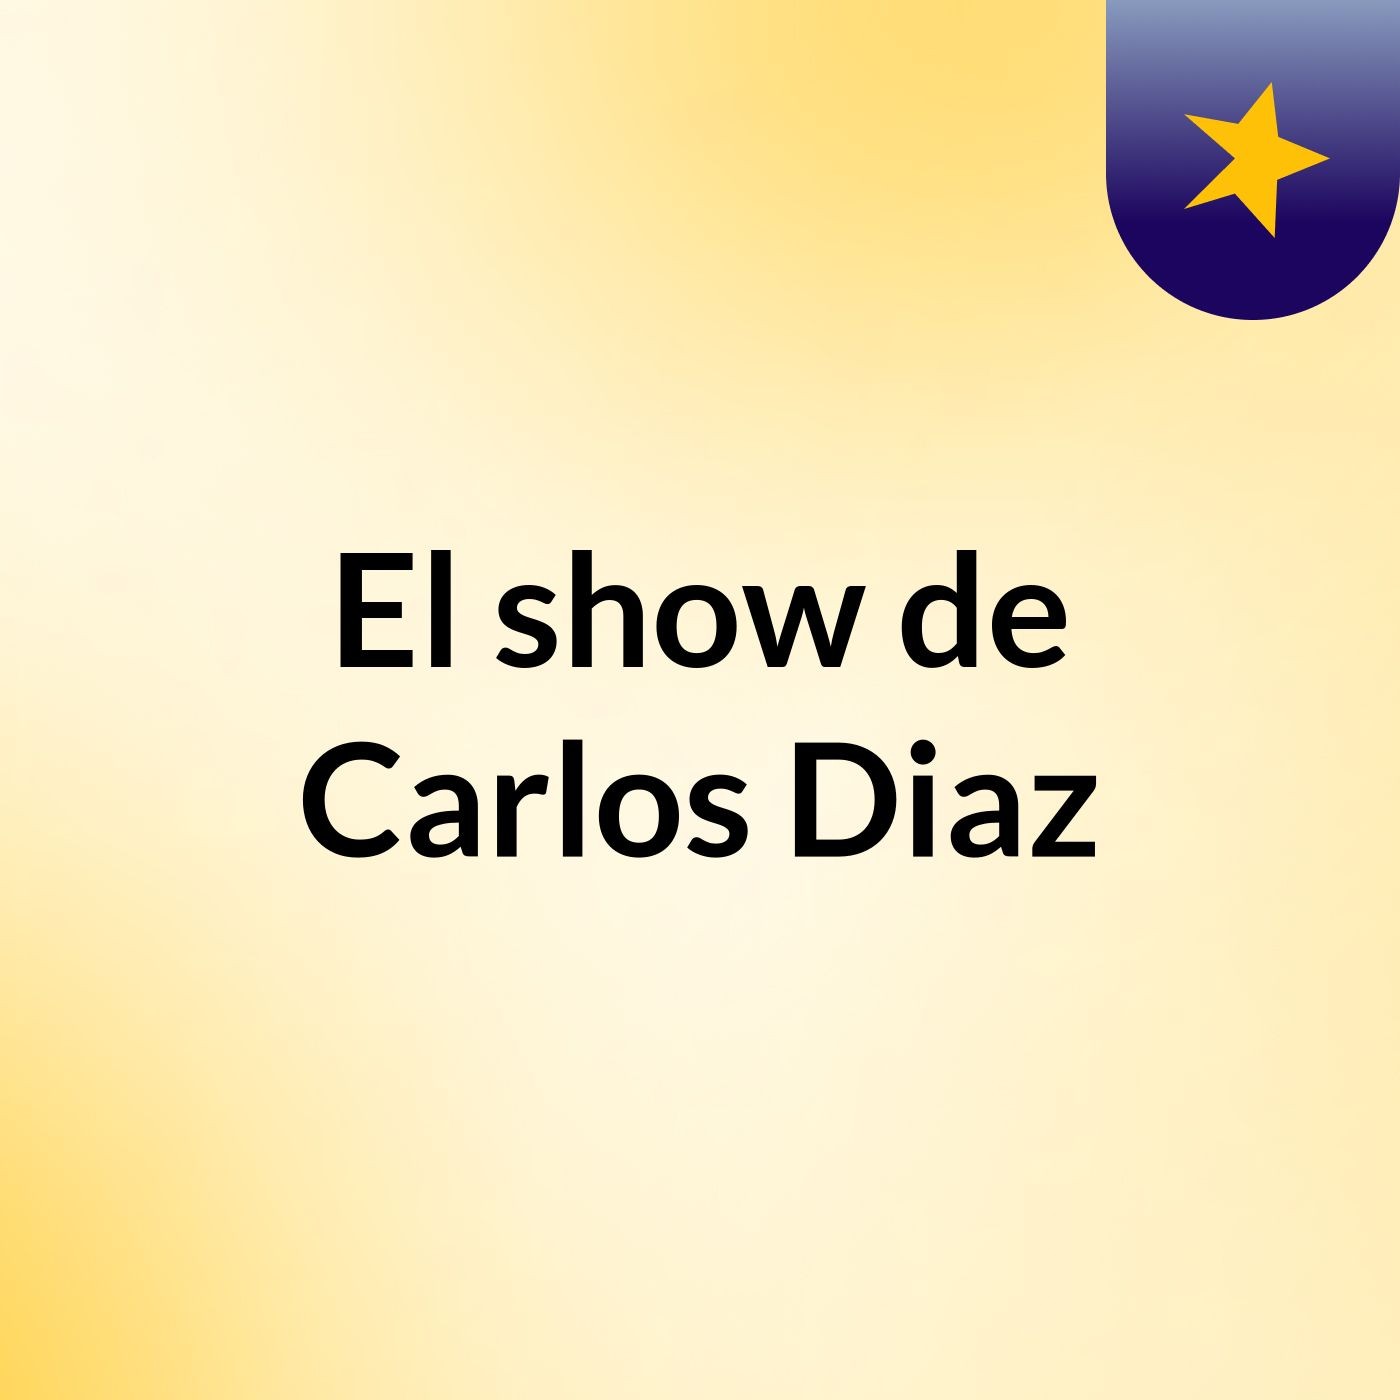 El show de Carlos Diaz